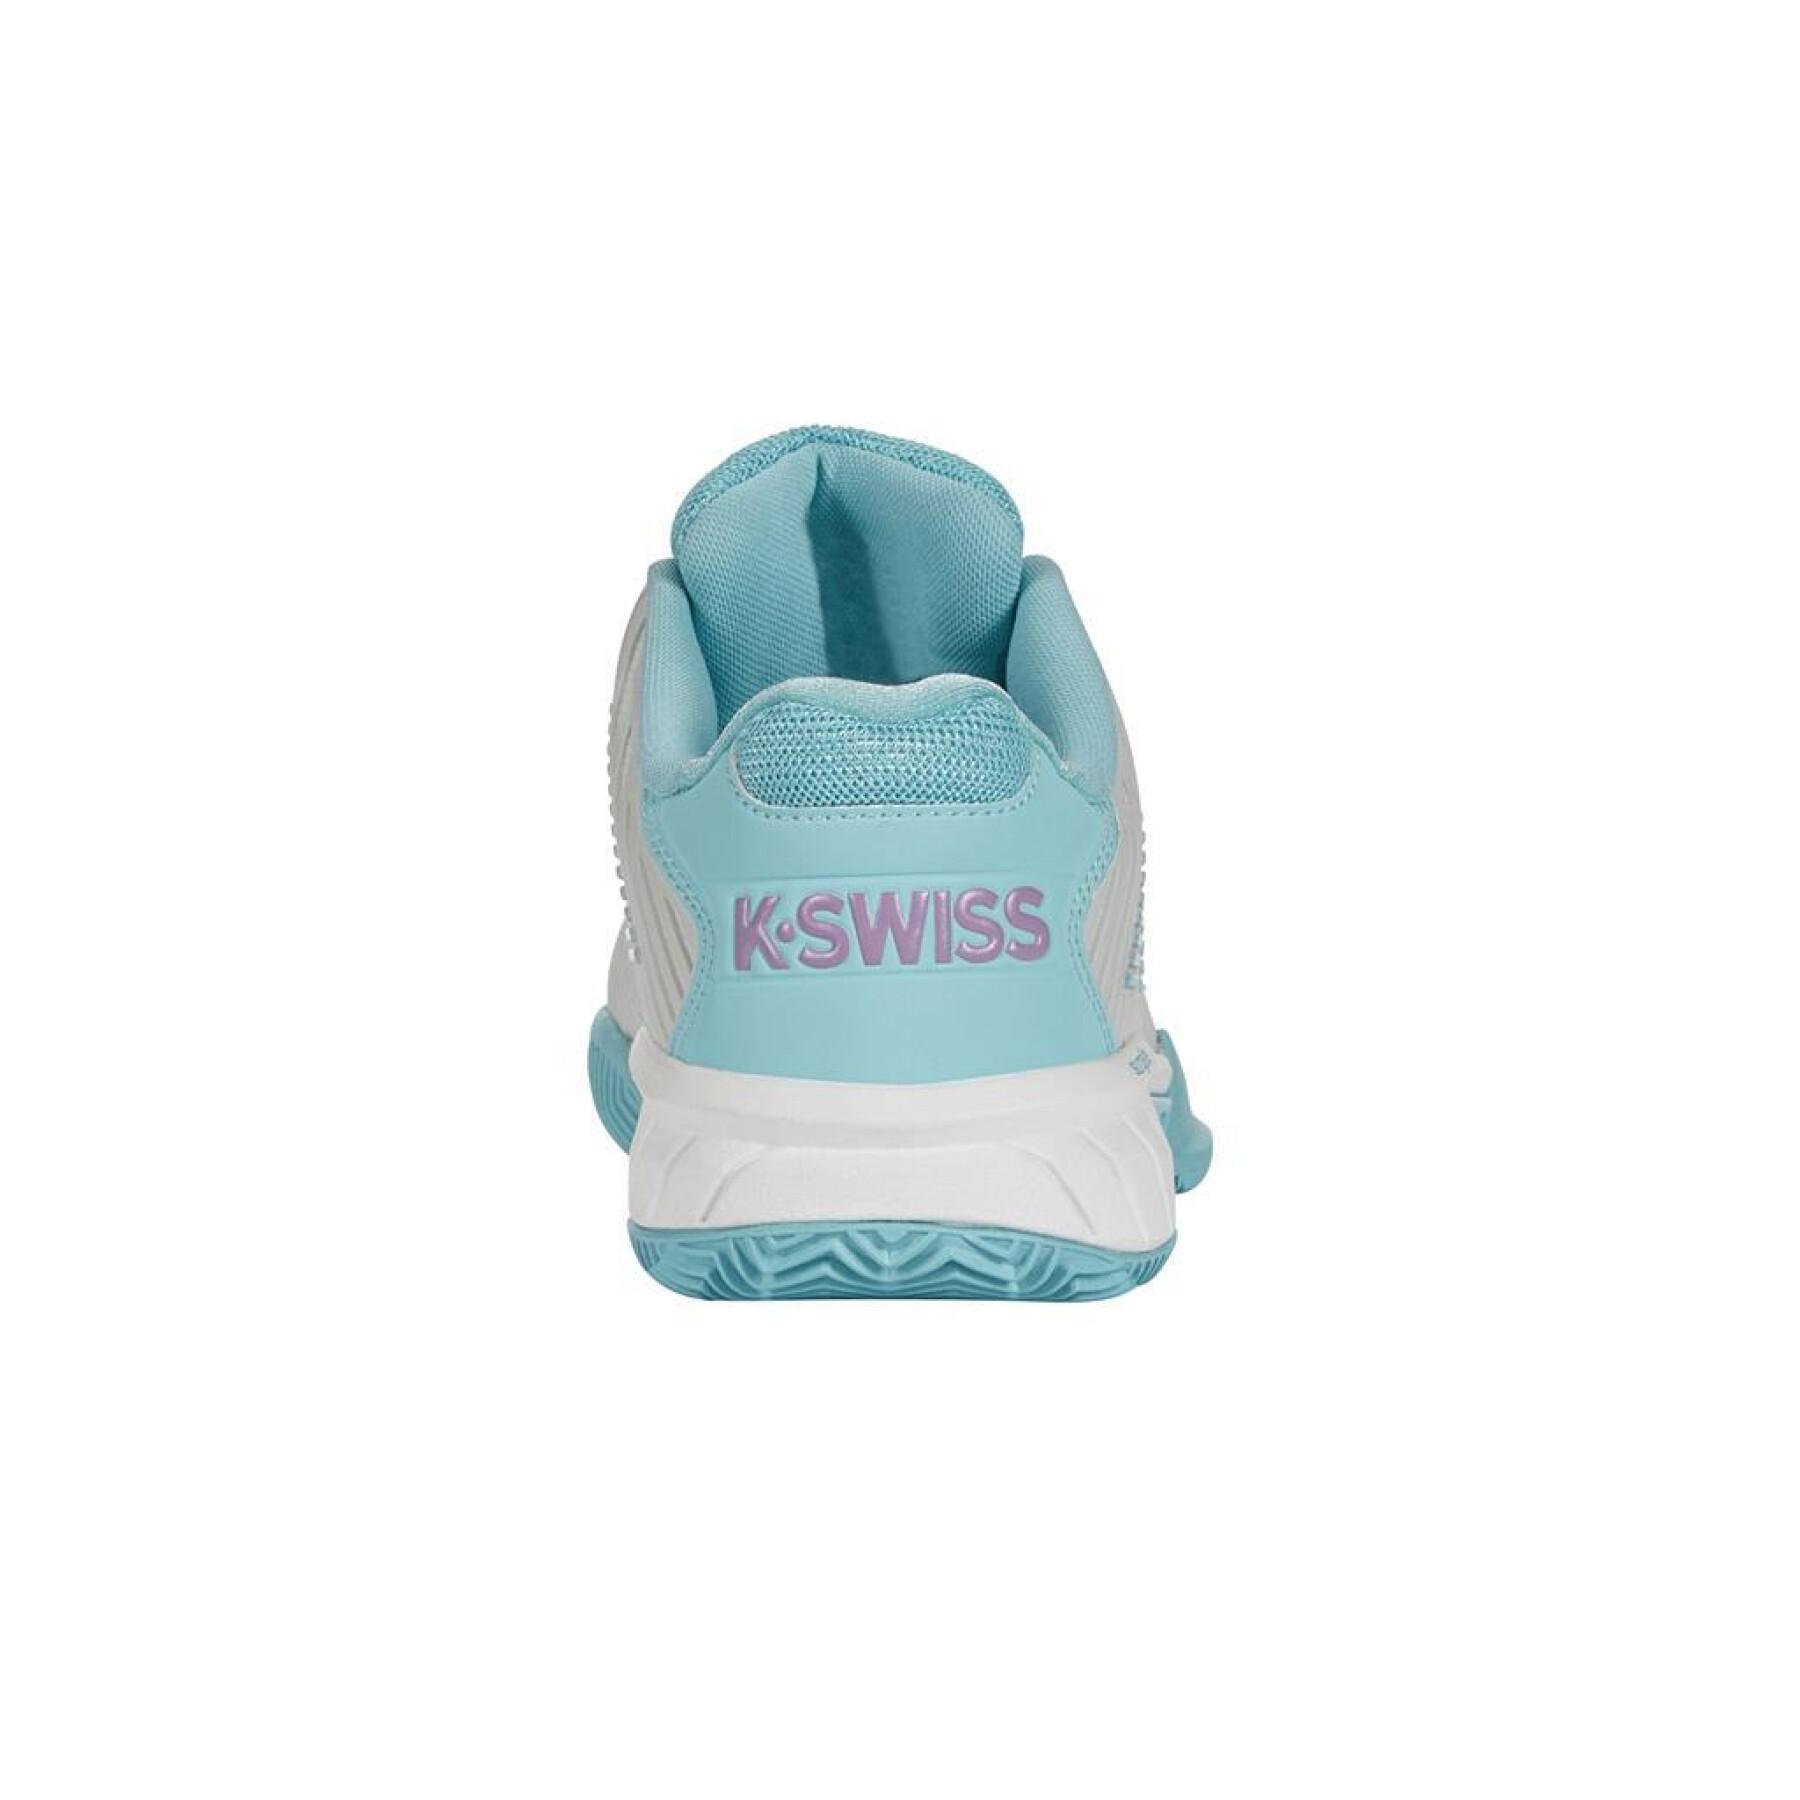 Women's tennis shoes K-Swiss Hypercourt Express 2 Hb